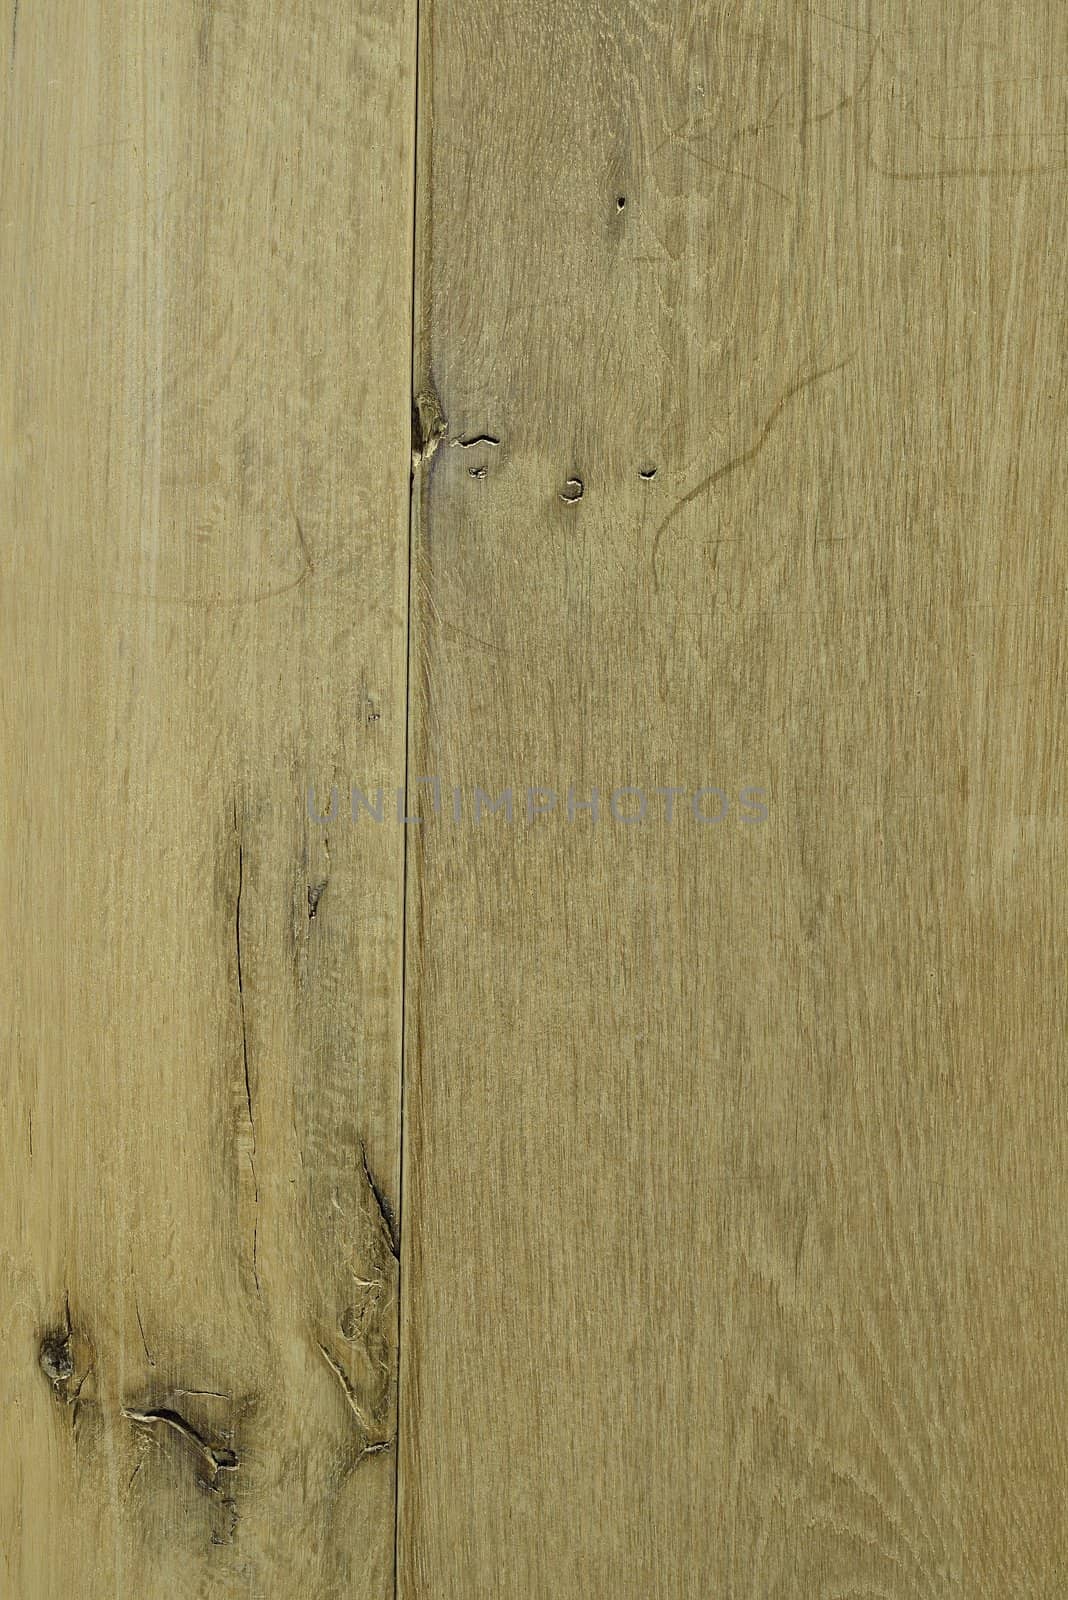 A frame of a oak wooden texture